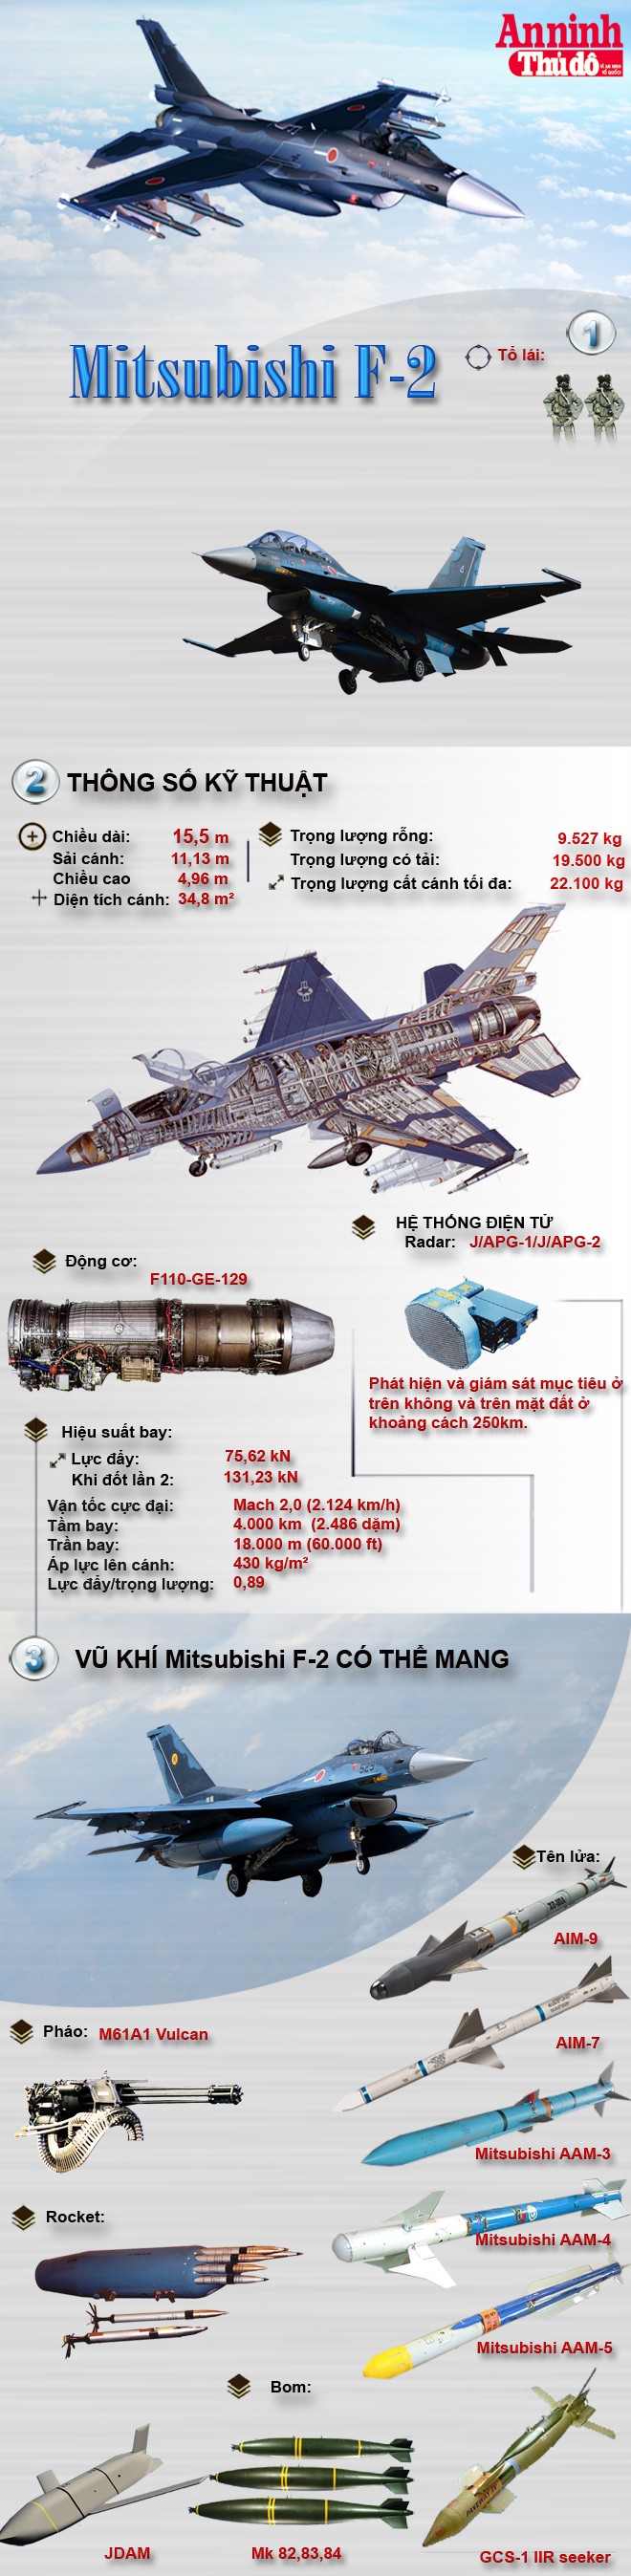 [Infographic] Mitsubishi F-2 – Tinh hoa của công nghiệp quốc phòng Nhật Bản